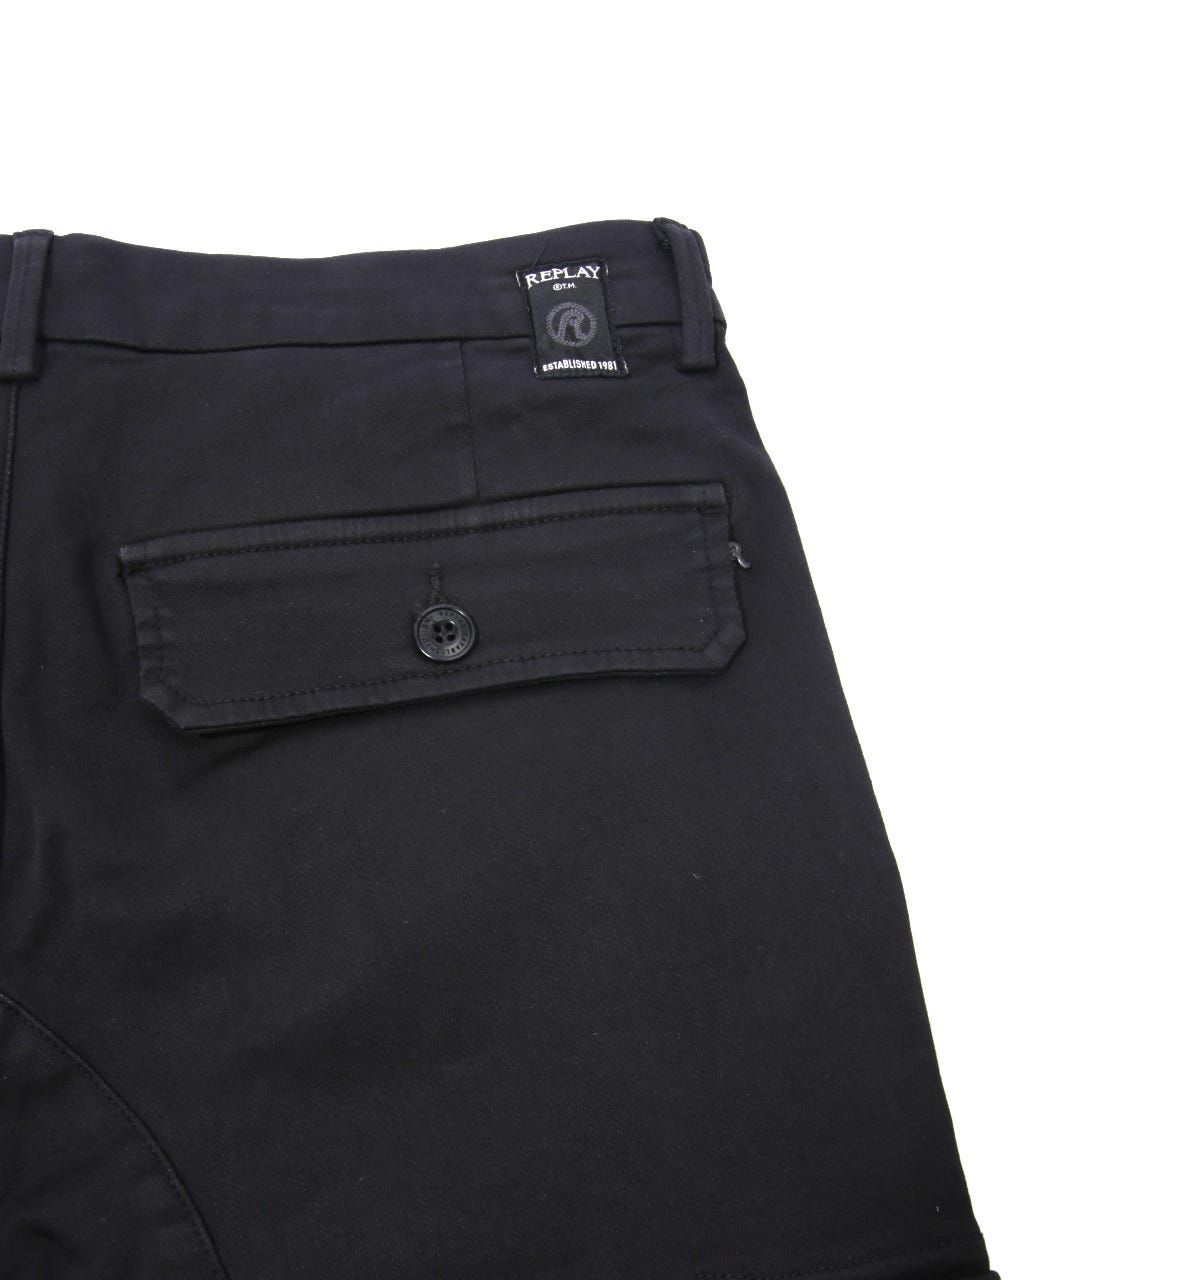 Replay Jaan Hyperflex Slim Fit Cargo Jeans - Black